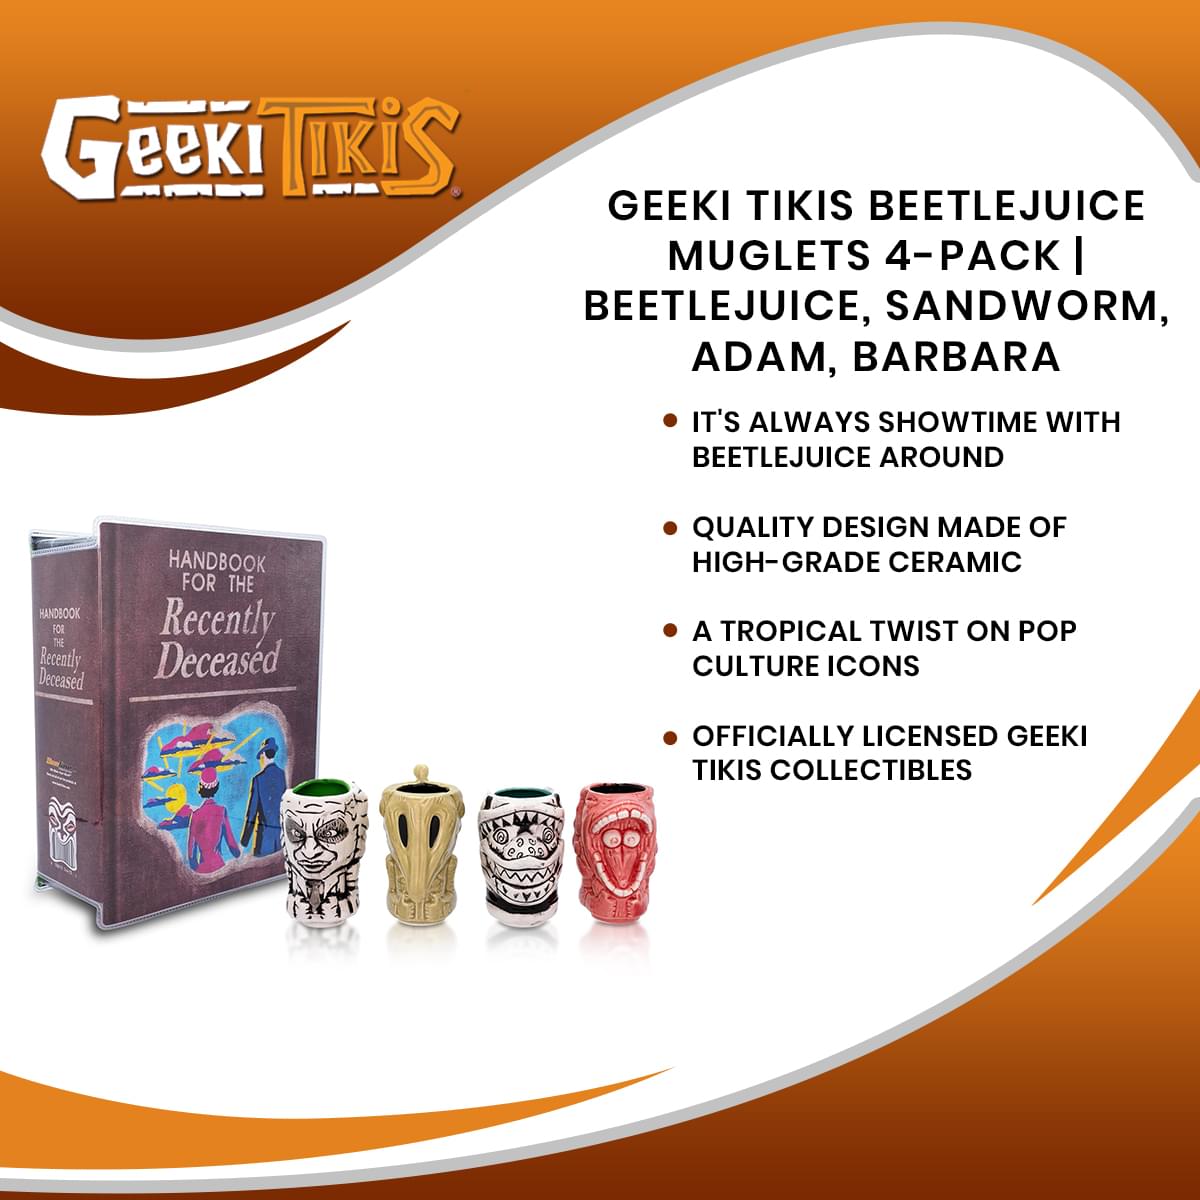 Geeki Tikis Beetlejuice Muglets 4-Pack | Beetlejuice, Sandworm, Adam, Barbara